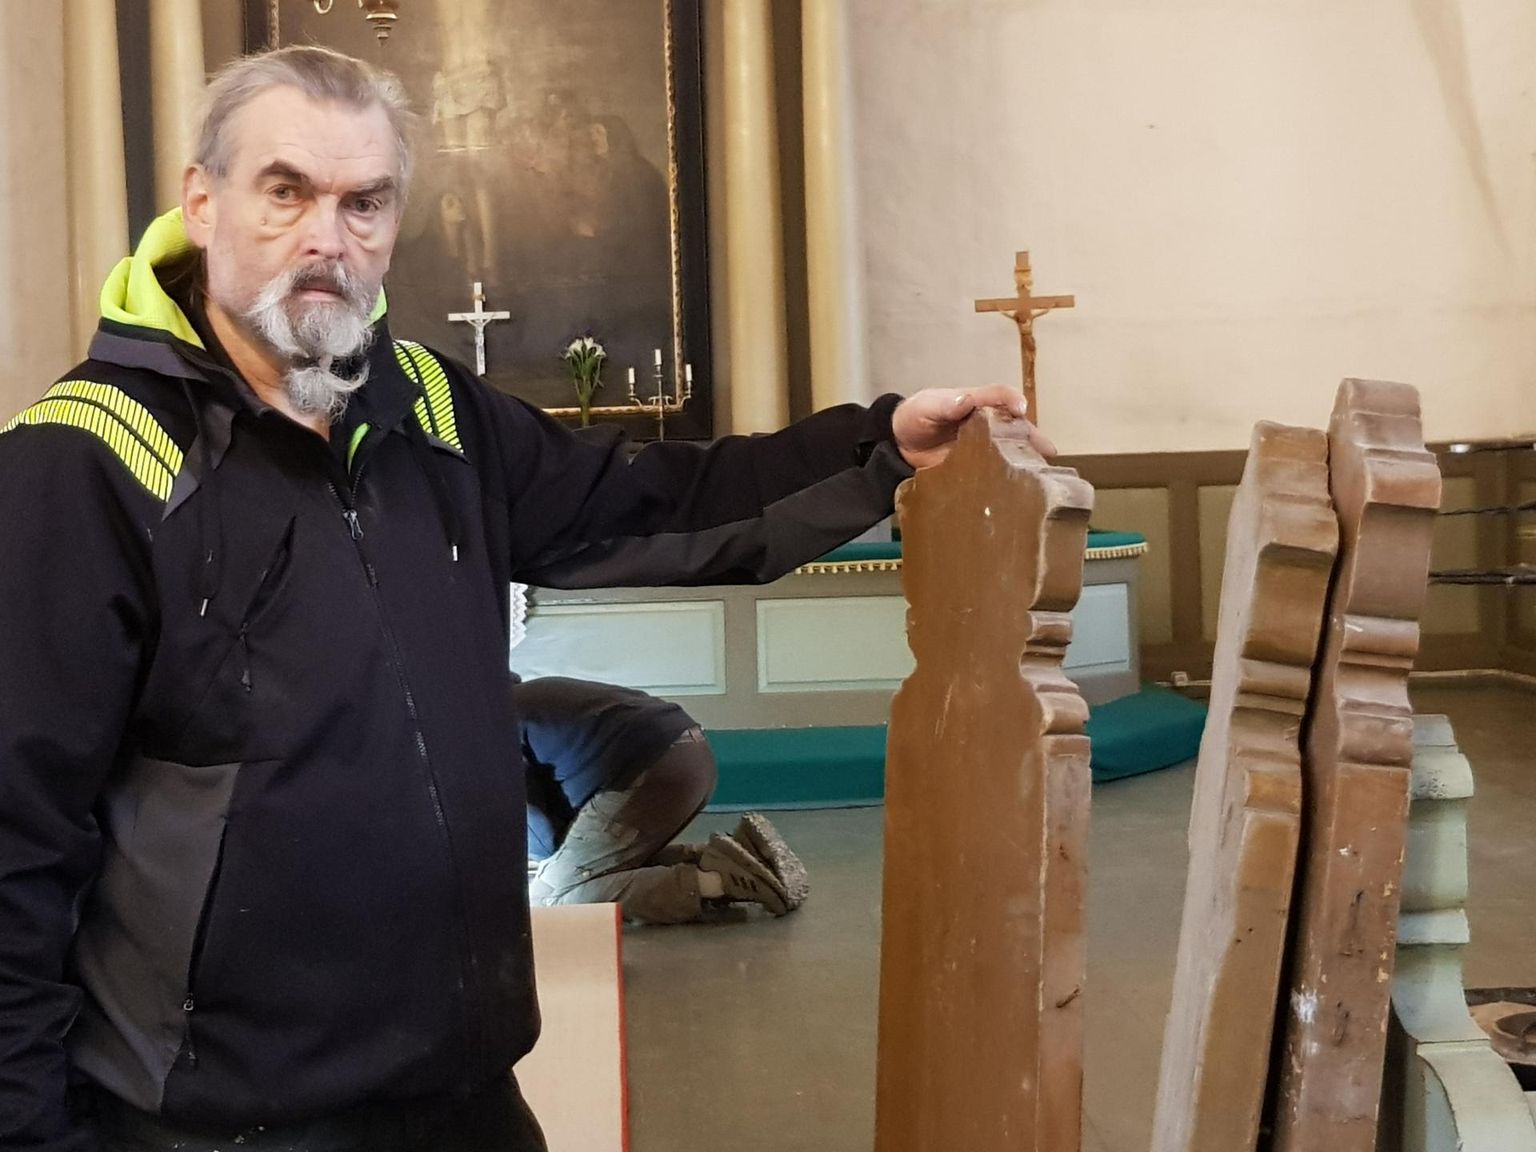 Представитель церкви Йоэль Роос сказал, что хотел бы восстановить прежний вид скамеек.